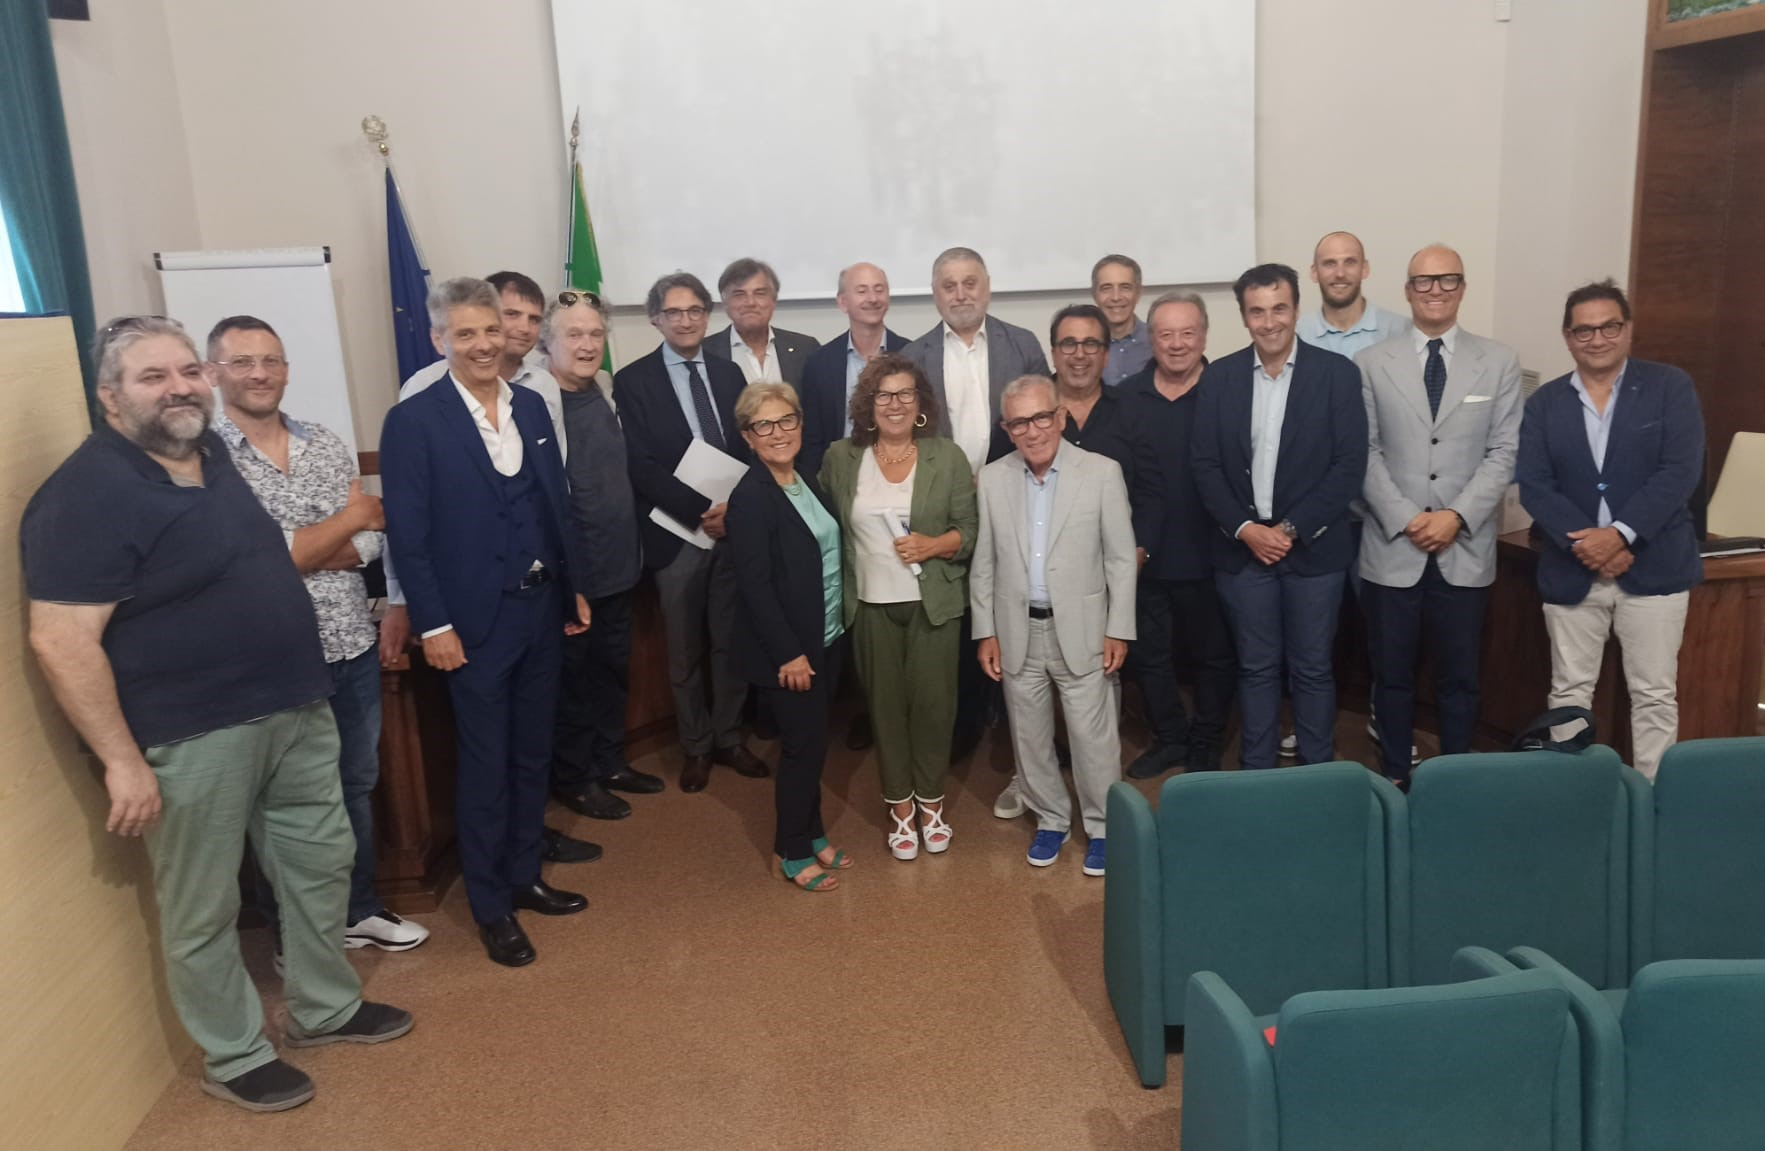 Clicca per accedere all'articolo Anna Maria Cardone eletta Presidente della Consulta delle professioni della Camera di Commercio Chieti Pescara